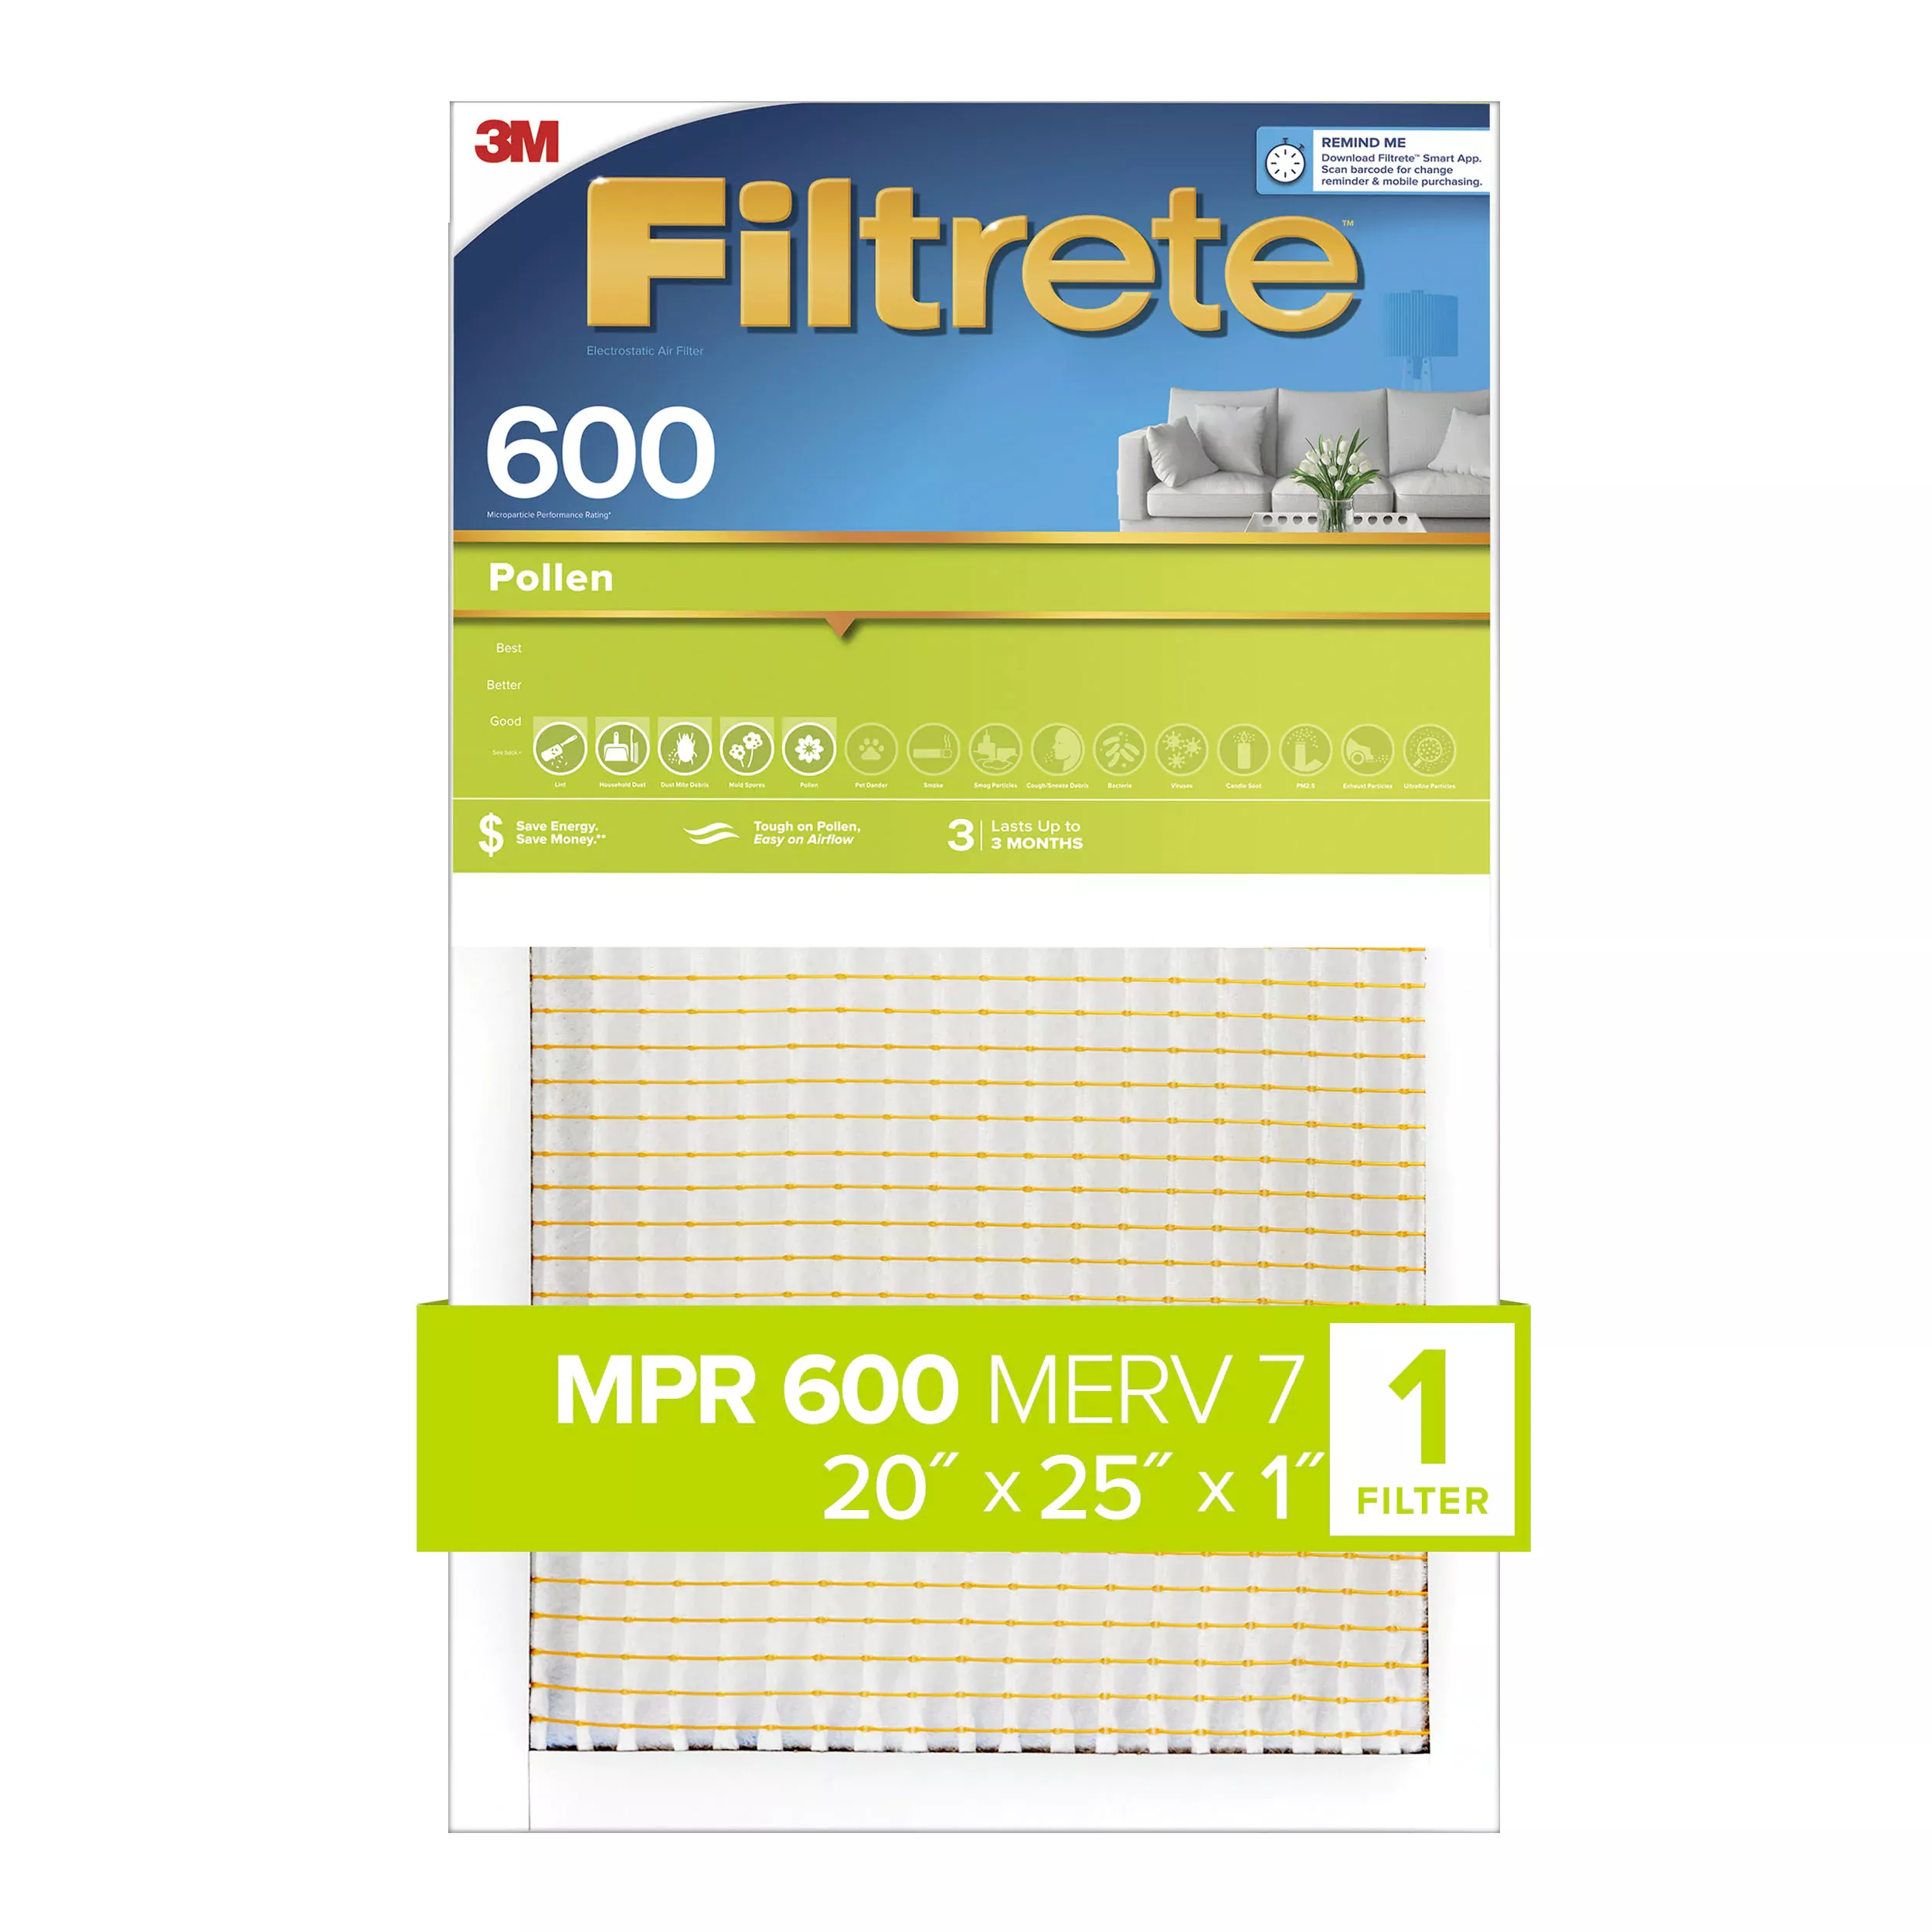 Filtrete™ Pollen Air Filter, 600 MPR, 9833-4, 20 in x 25 in x 1 in (50.8
cm x 63.5 cm x 2.54 cm)